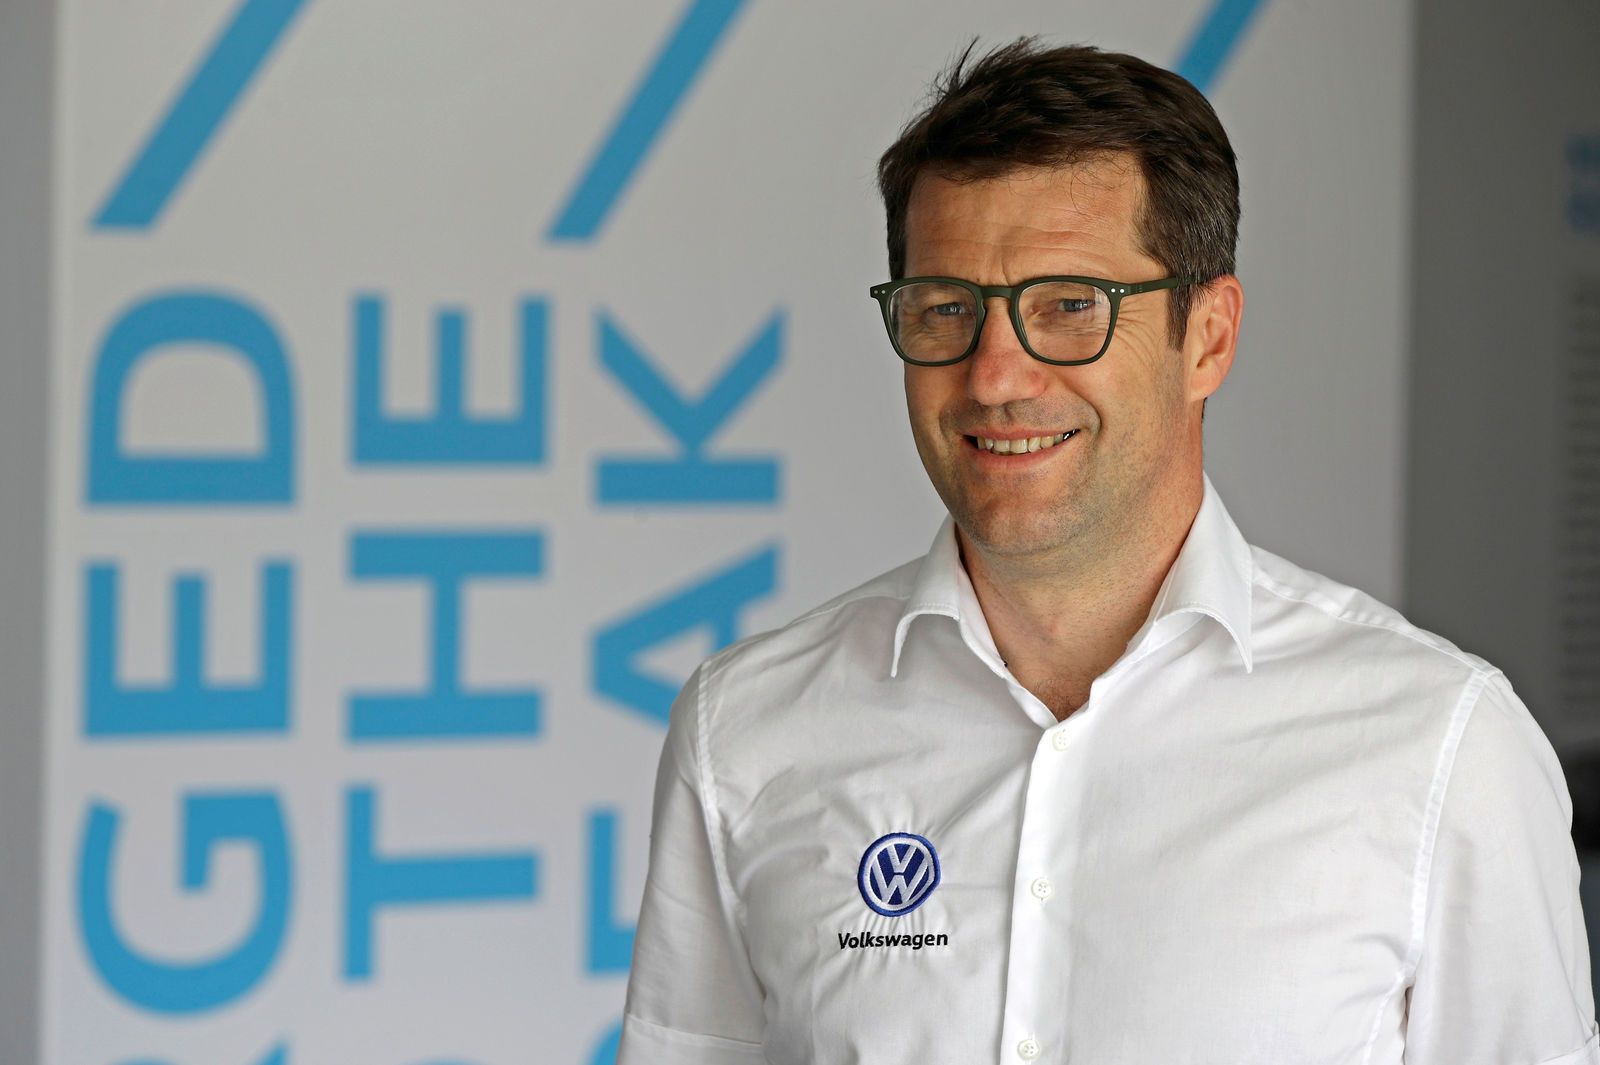 François-Xavier Demaison, Technical Director Volkswagen Motorsport